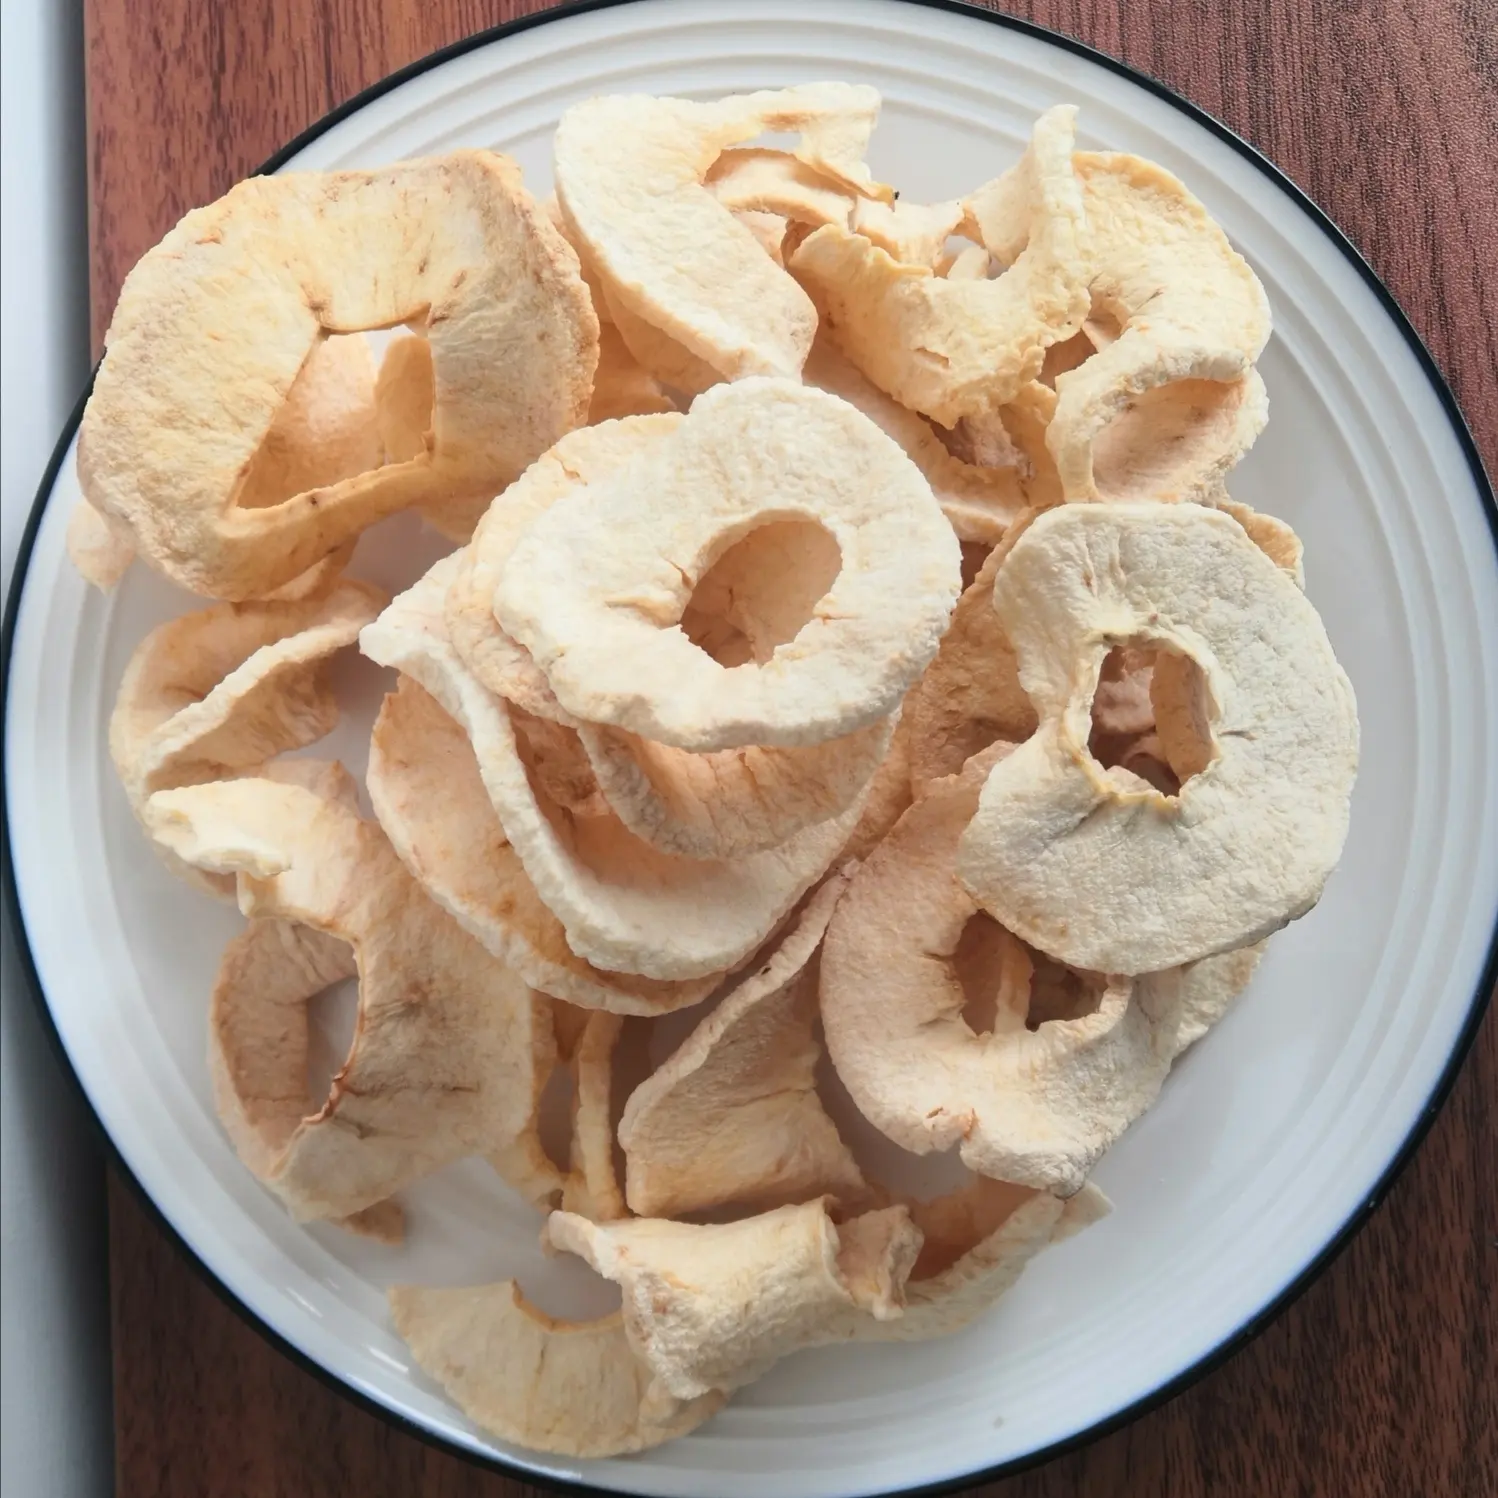 Honeycrisp फल नाश्ता उच्च विटामिन सामग्री दैनिक खाने एप्पल चिप्स मीठा और खट्टा बच्चों की तरह नाश्ता